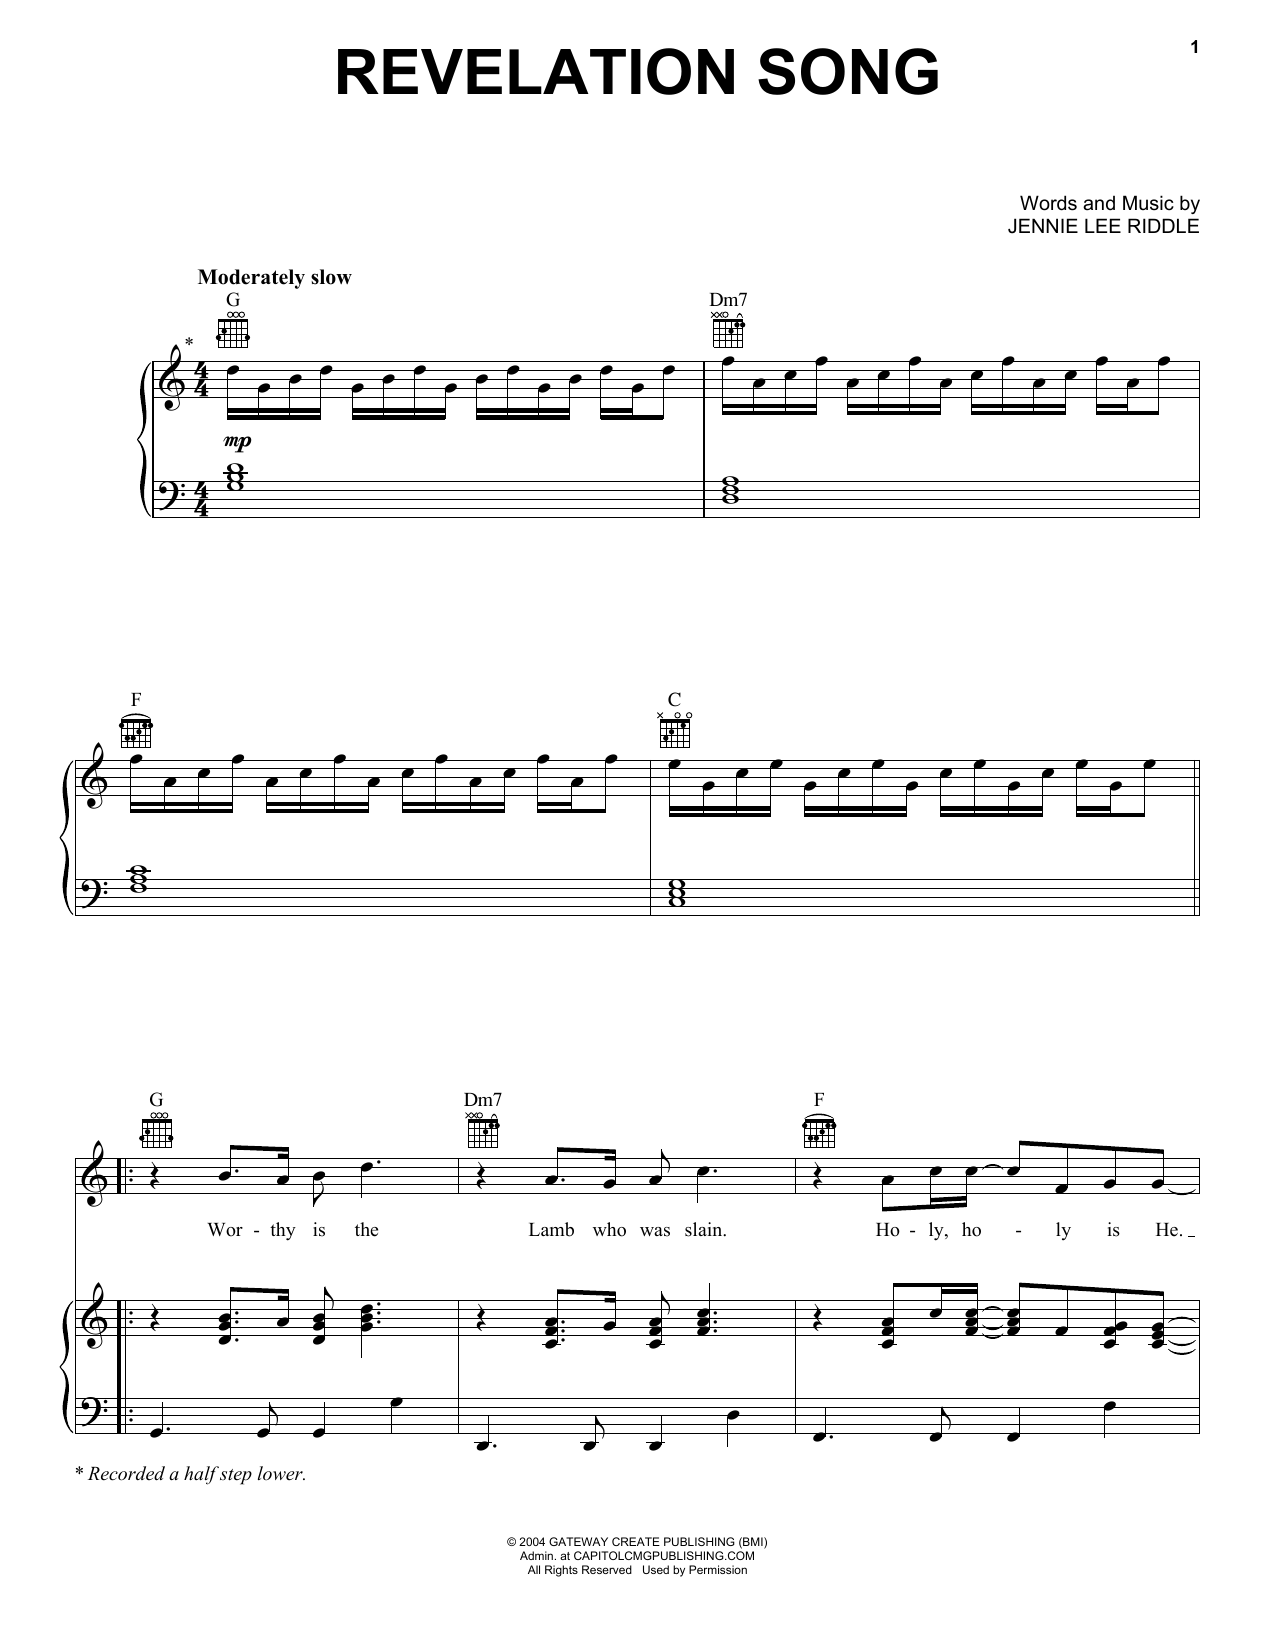 Jennie Lee Riddle Revelation Song Sheet Music Notes & Chords for Ukulele - Download or Print PDF